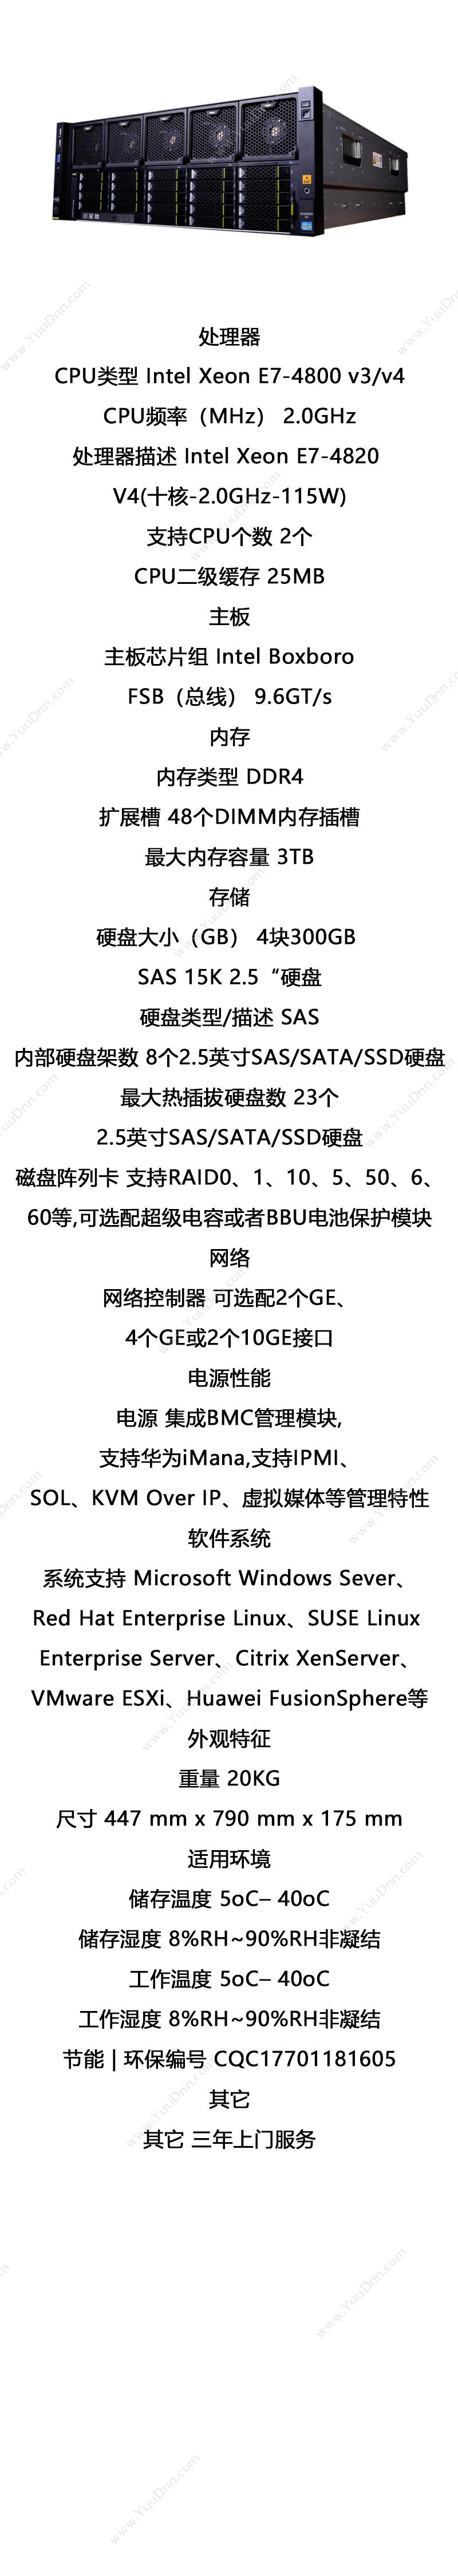 华为 Huawei RH5885 V3 服务器 447 mm x 790 mm x 175 mm 塔式服务器